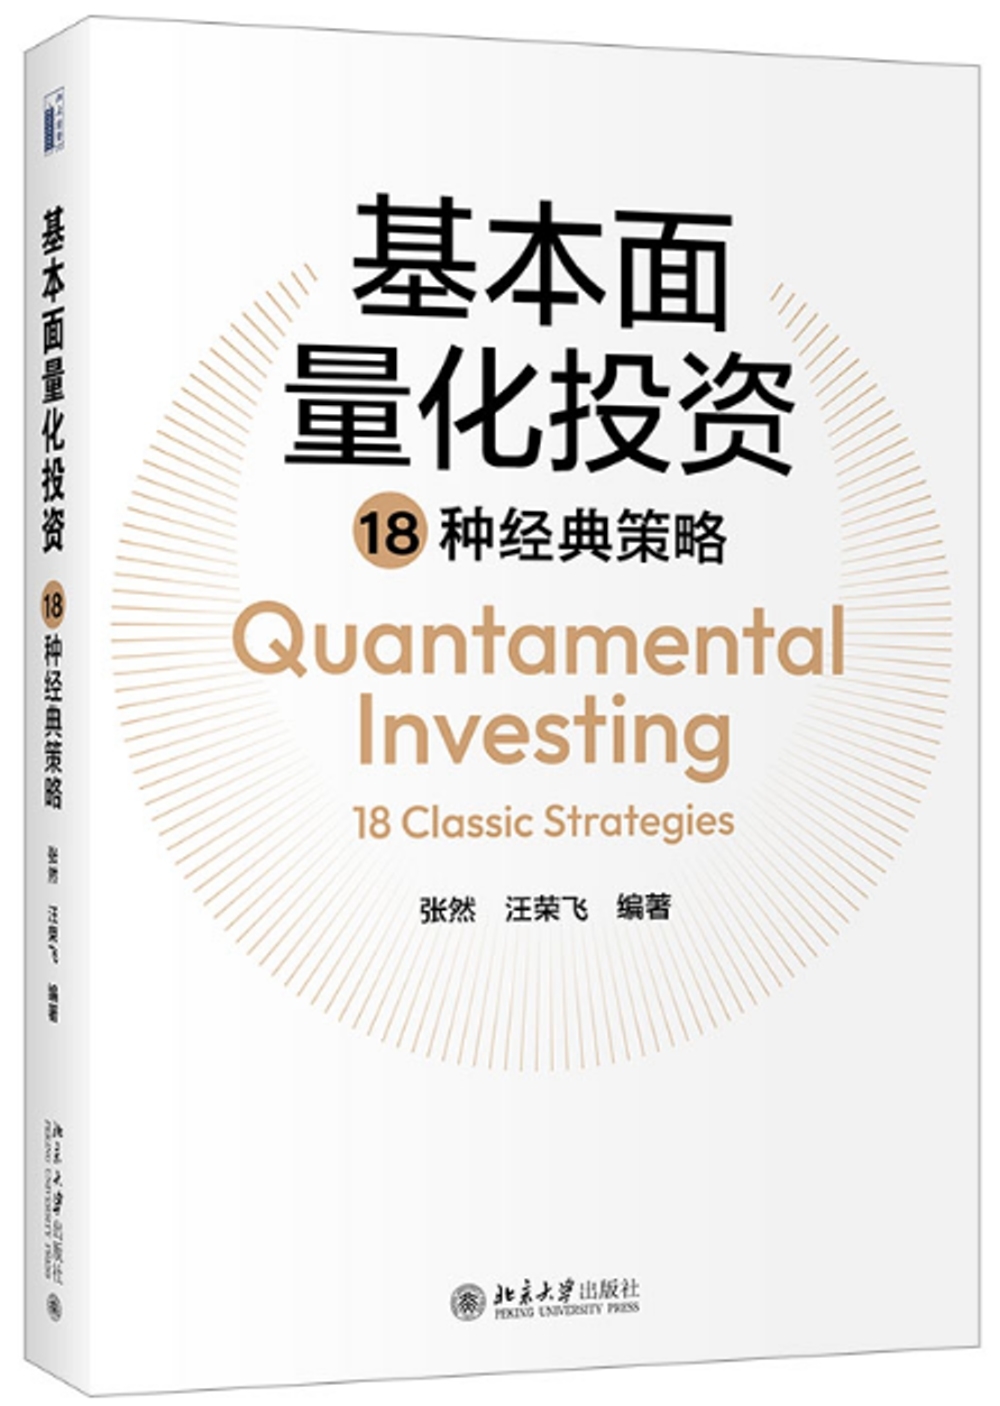 基本面量化投資18種經典策略